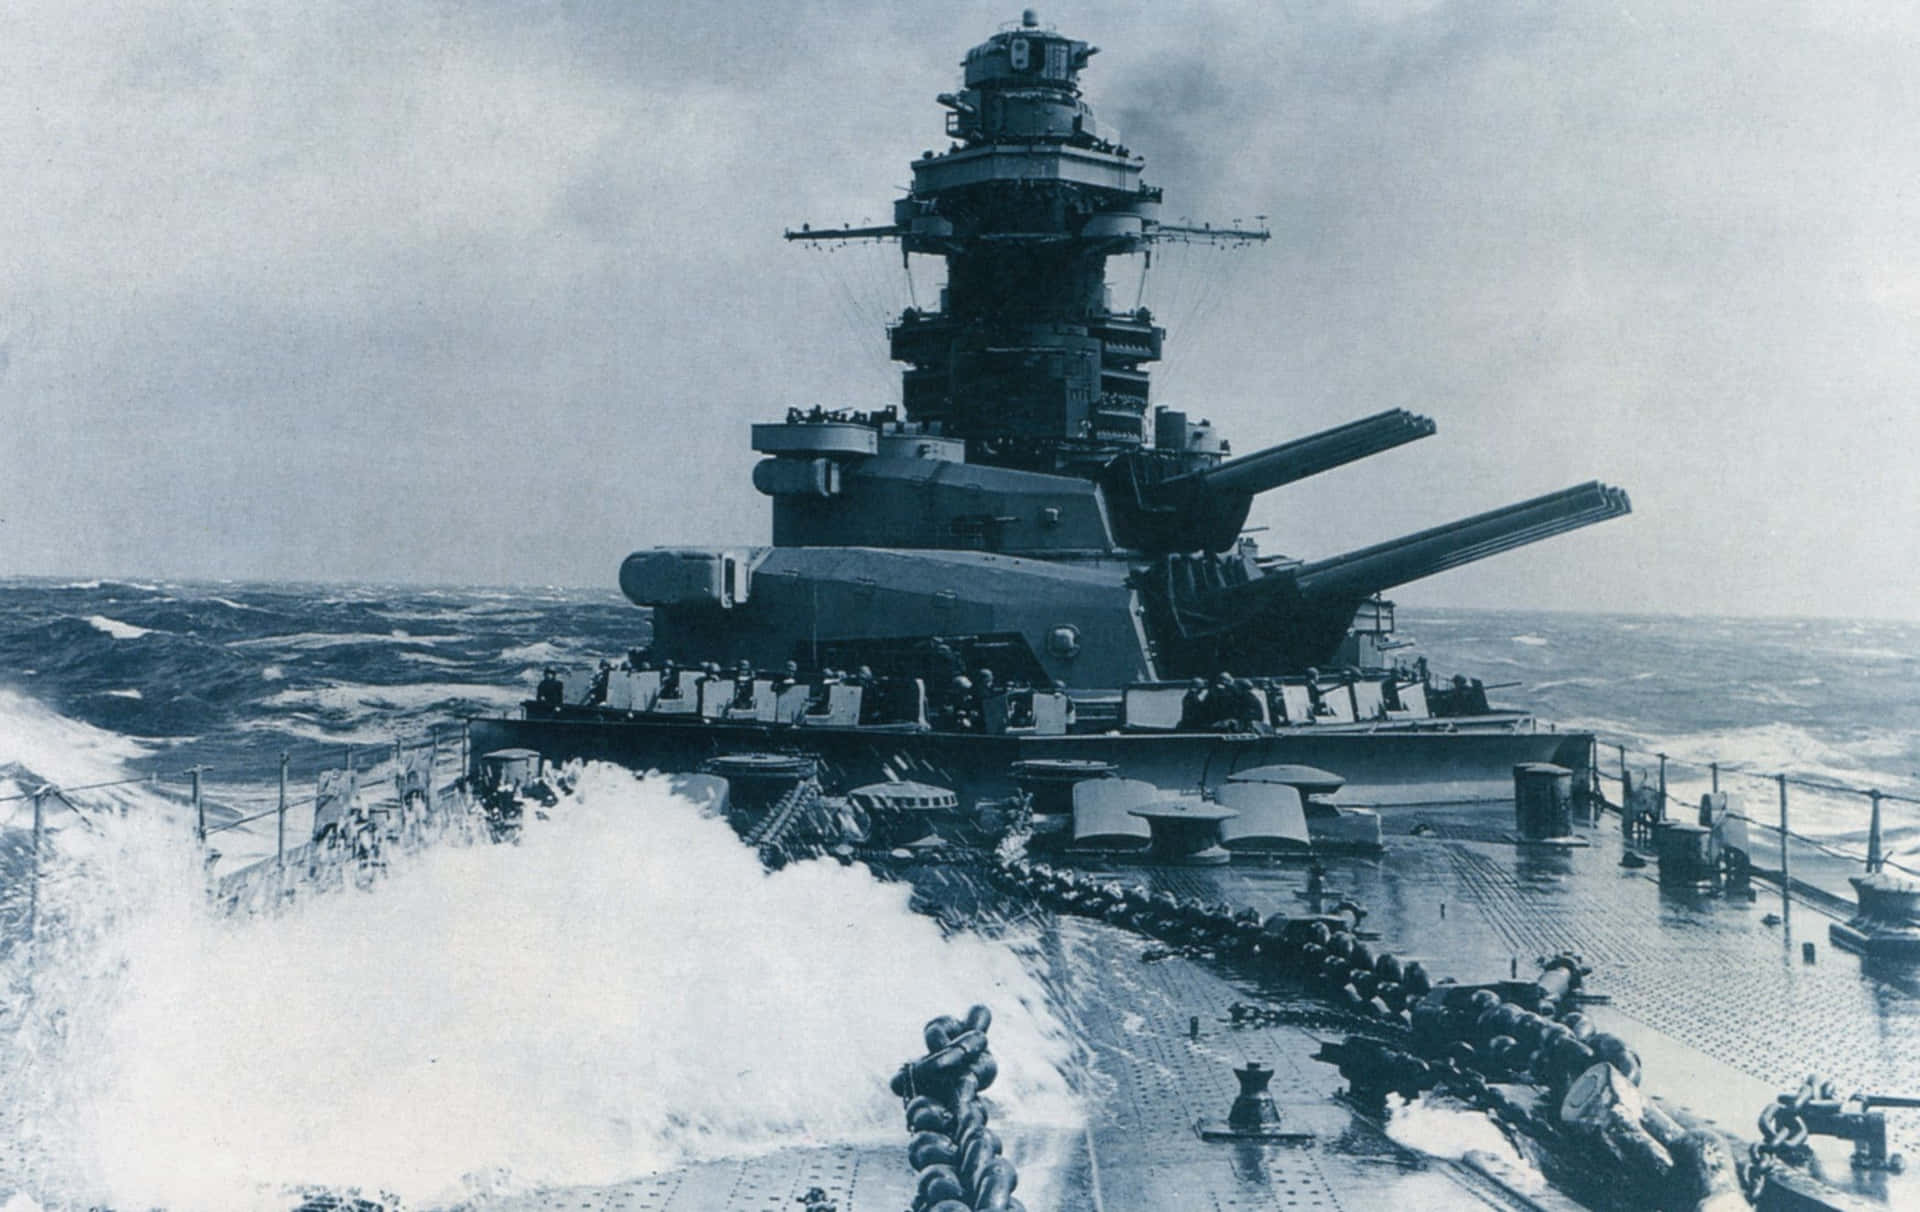 Commanding a modern battleship